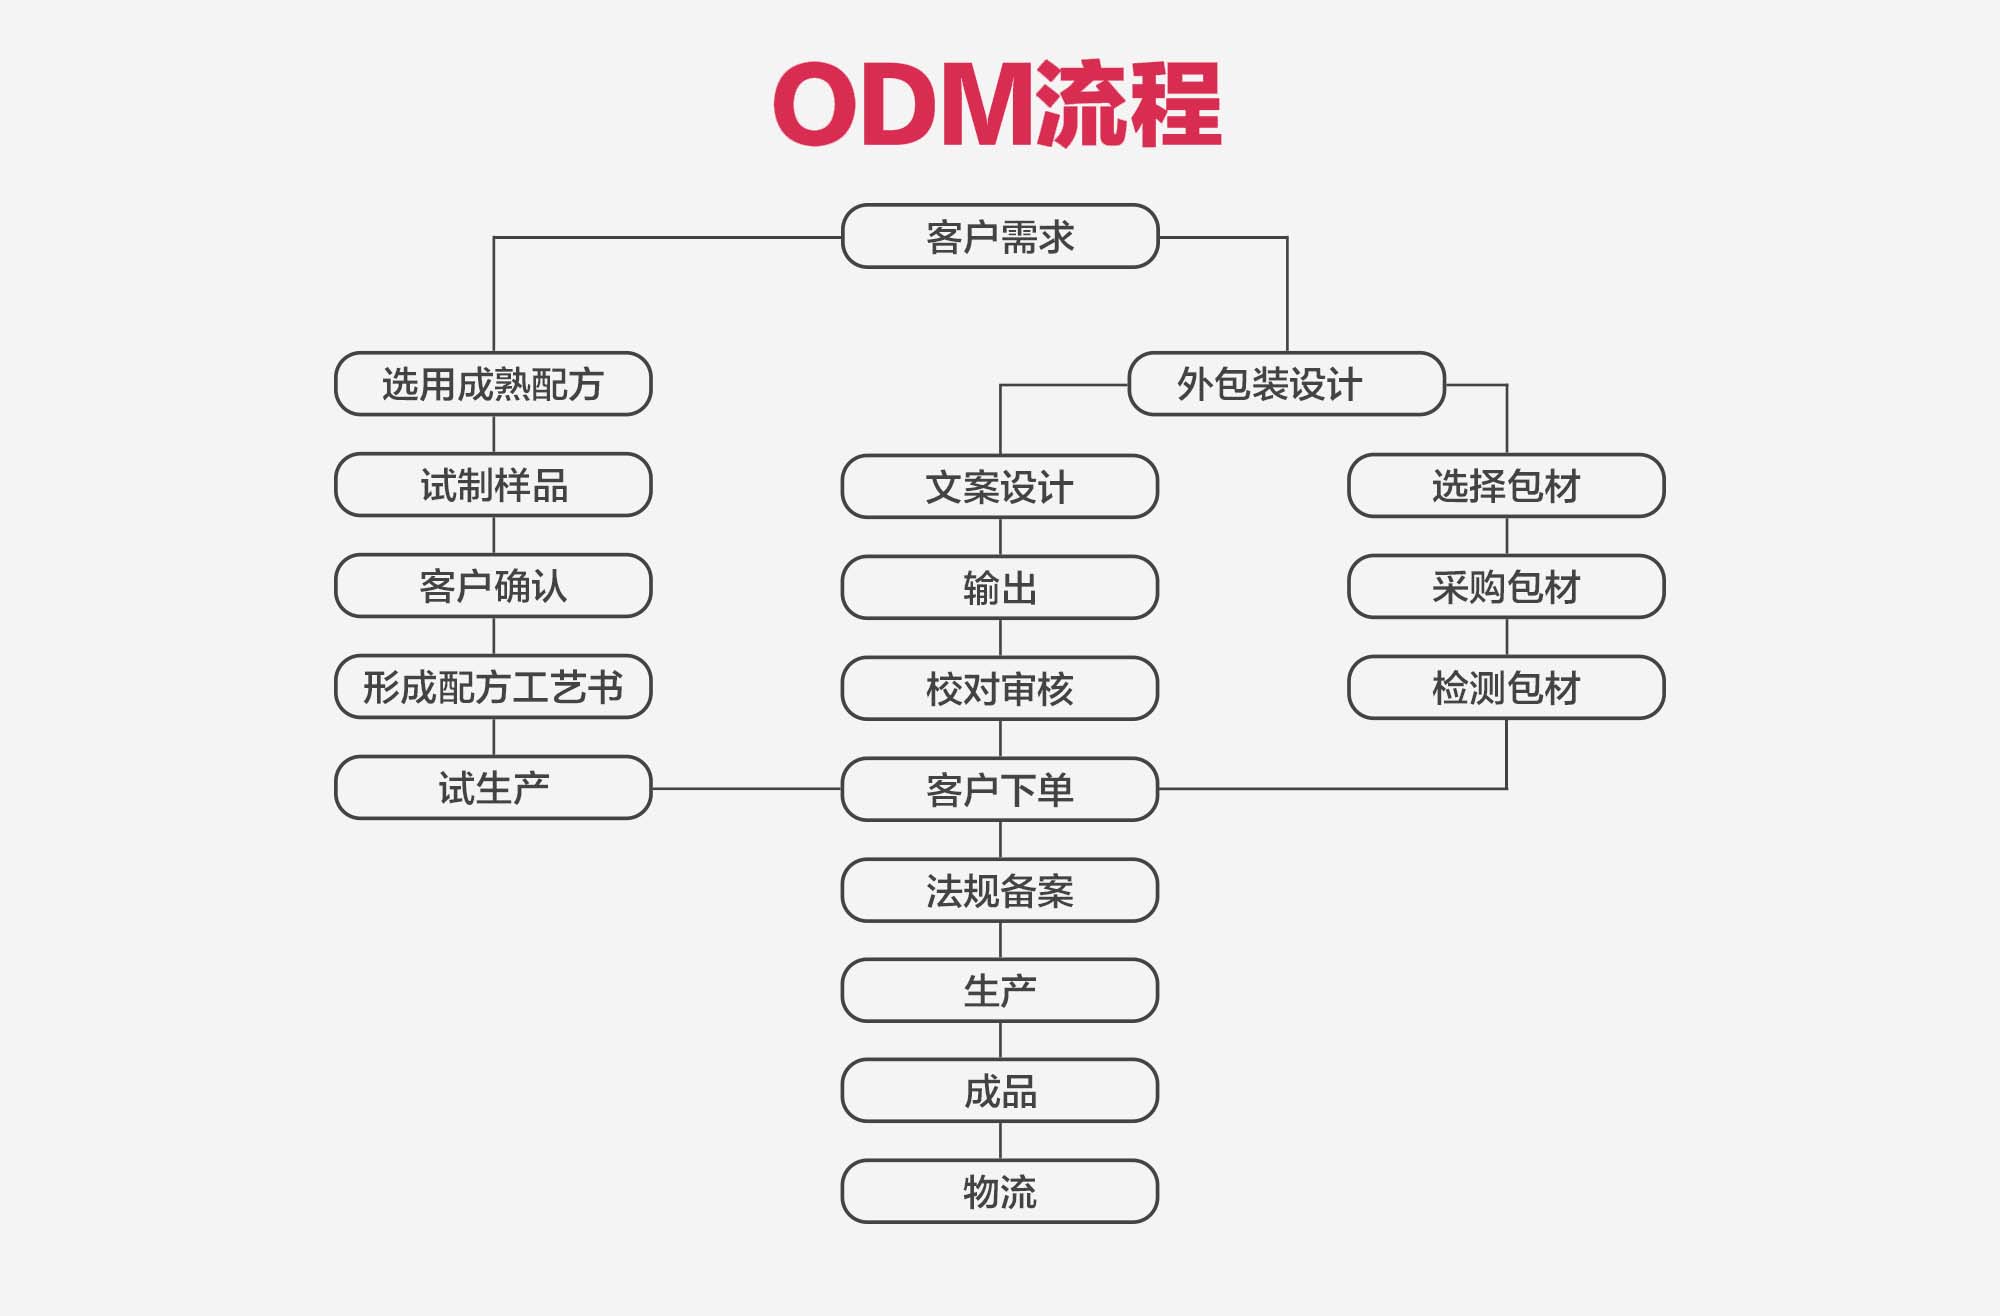 ODM业务(图1)